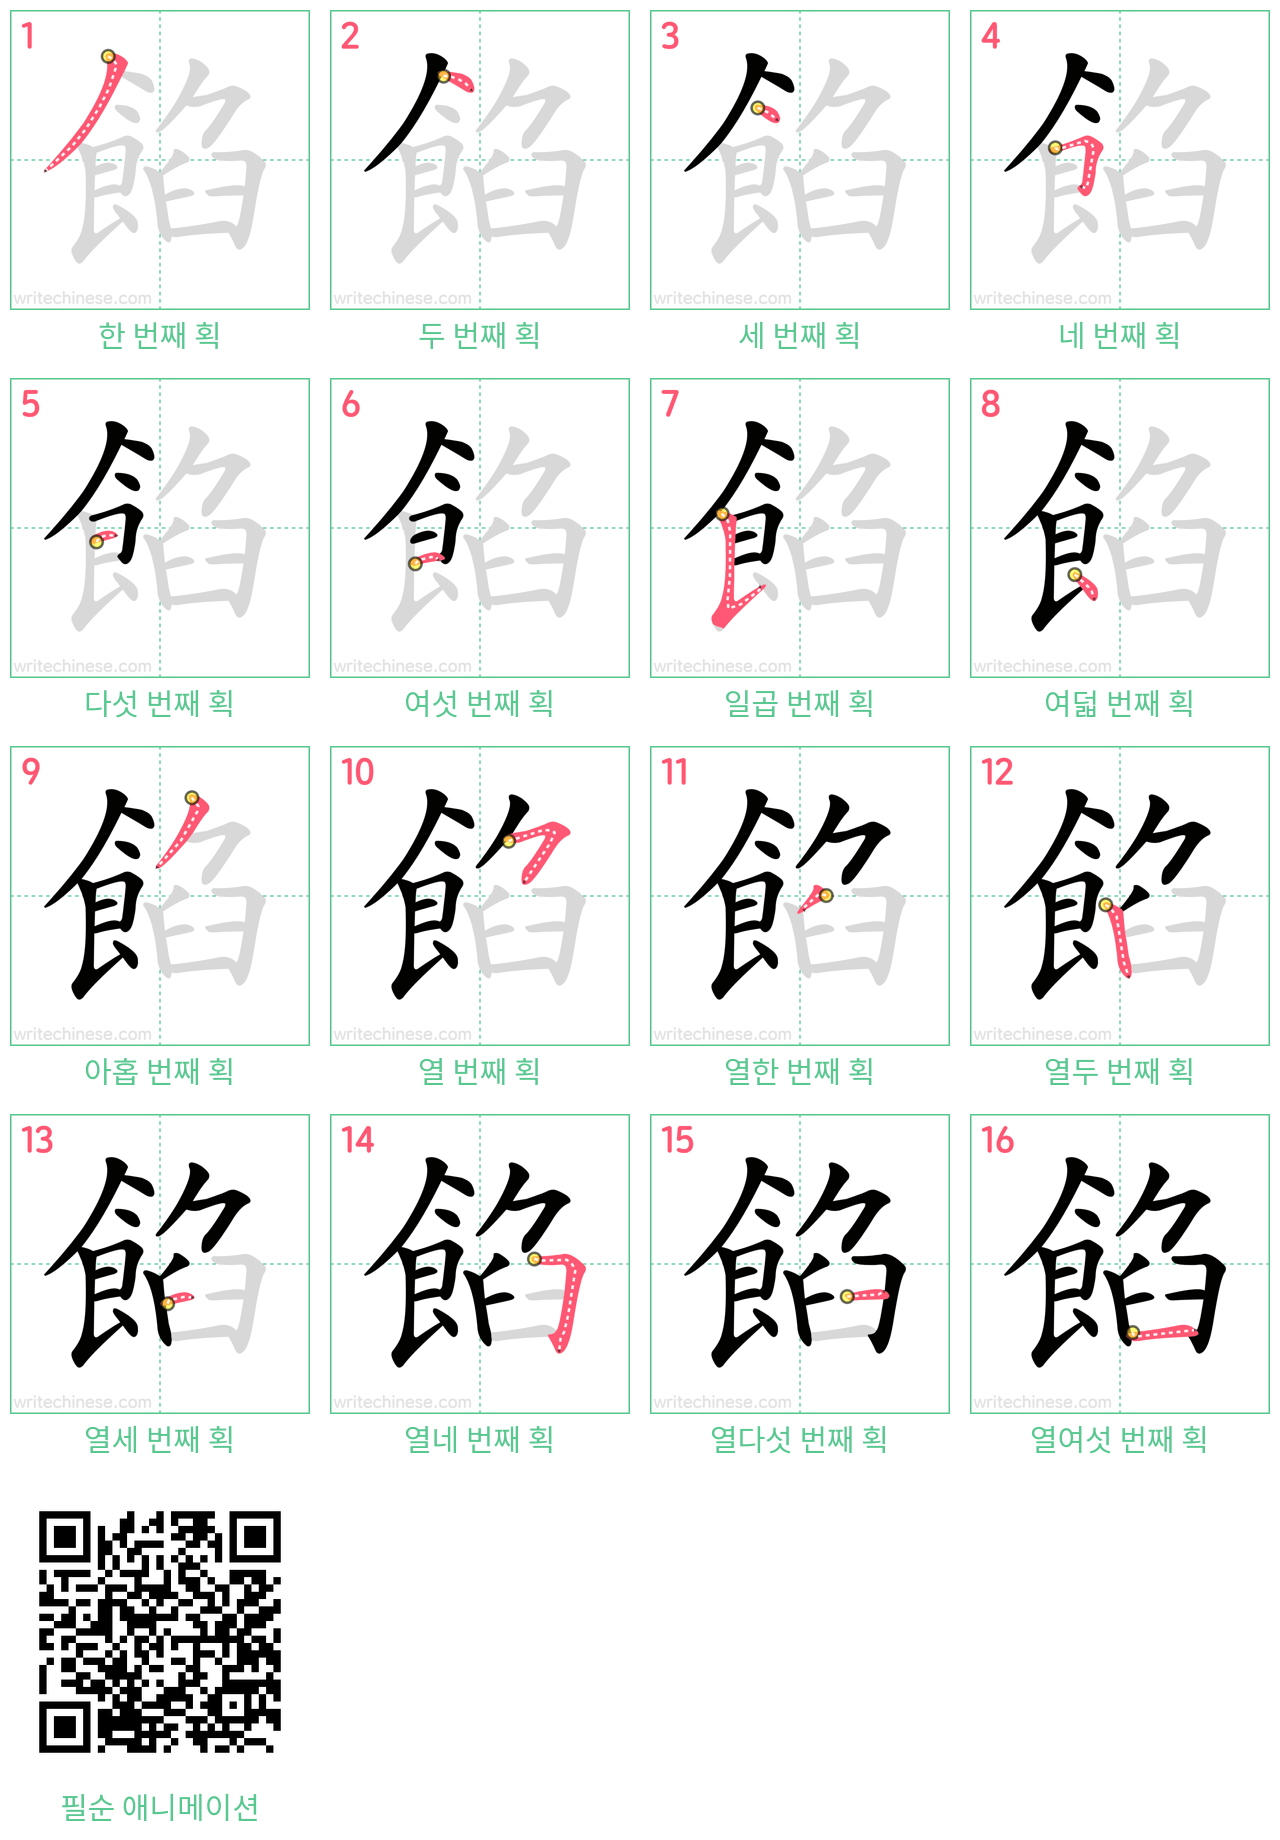 餡 step-by-step stroke order diagrams